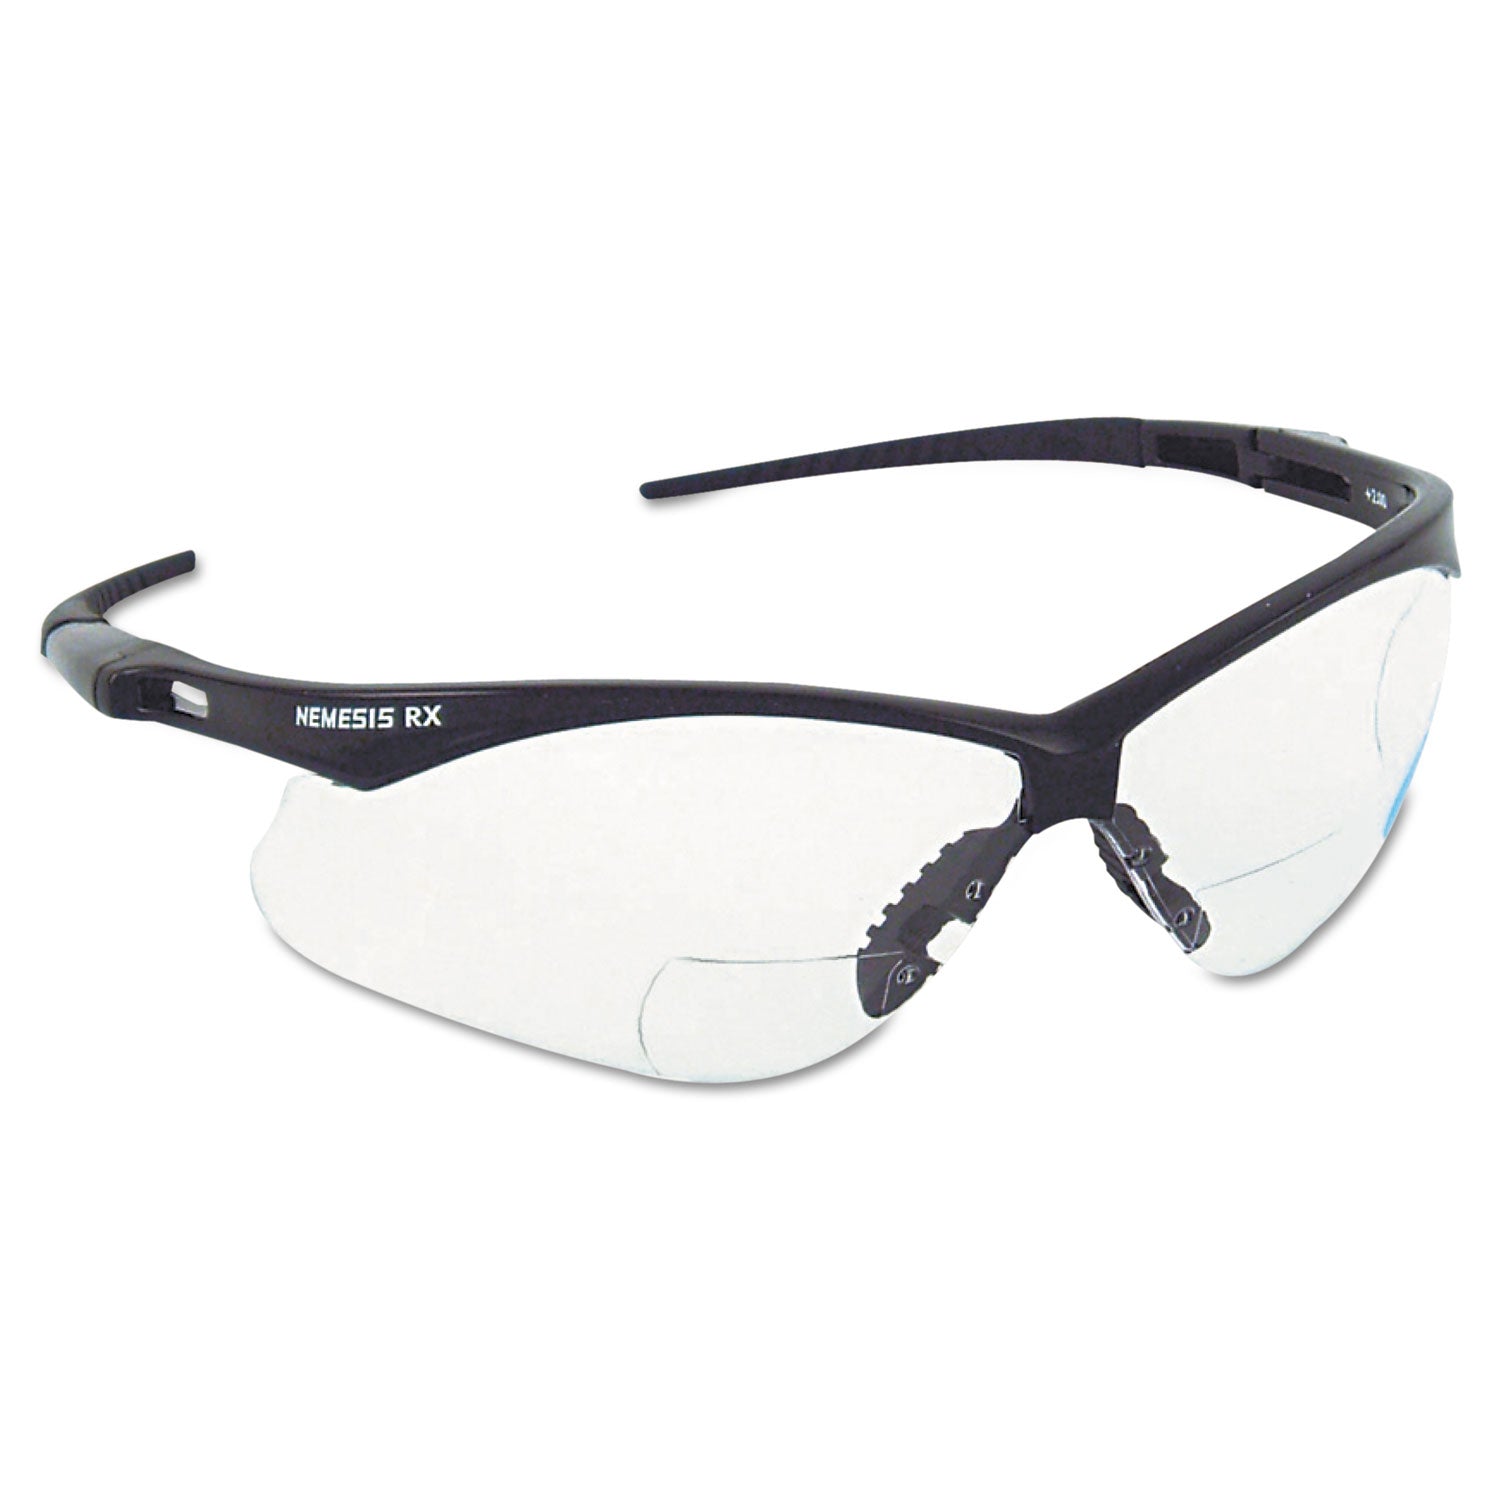 v60-nemesis-rx-reader-safety-glasses-black-frame-clear-lens-+15-diopter-strength_kcc28621 - 1